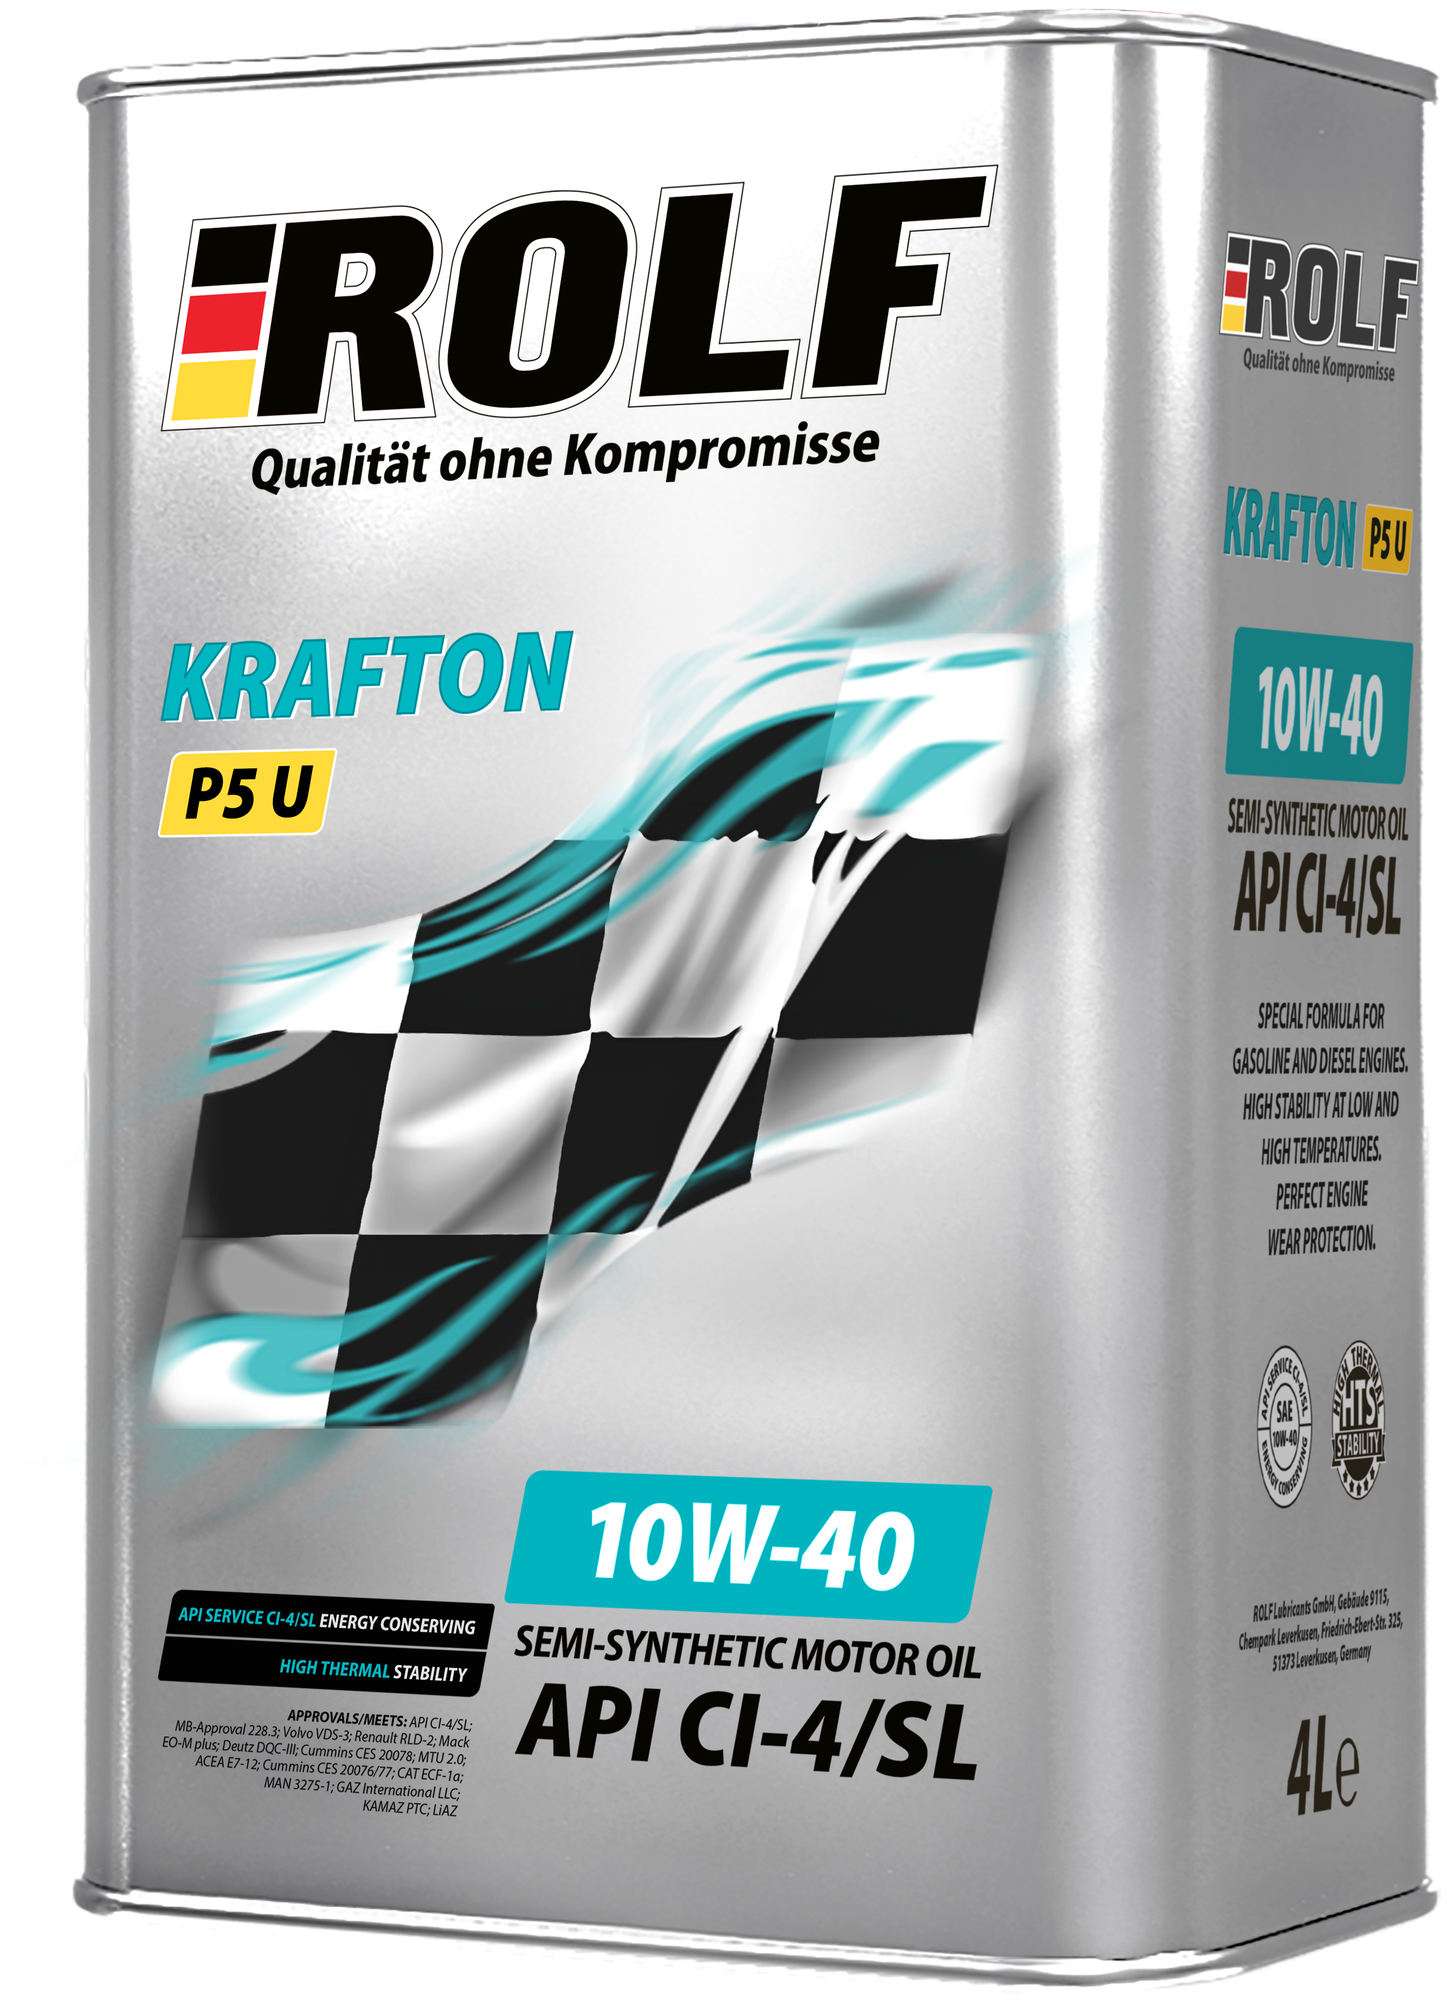 Полусинтетическое моторное масло ROLF Krafton P5 U 10W-40, 4 л